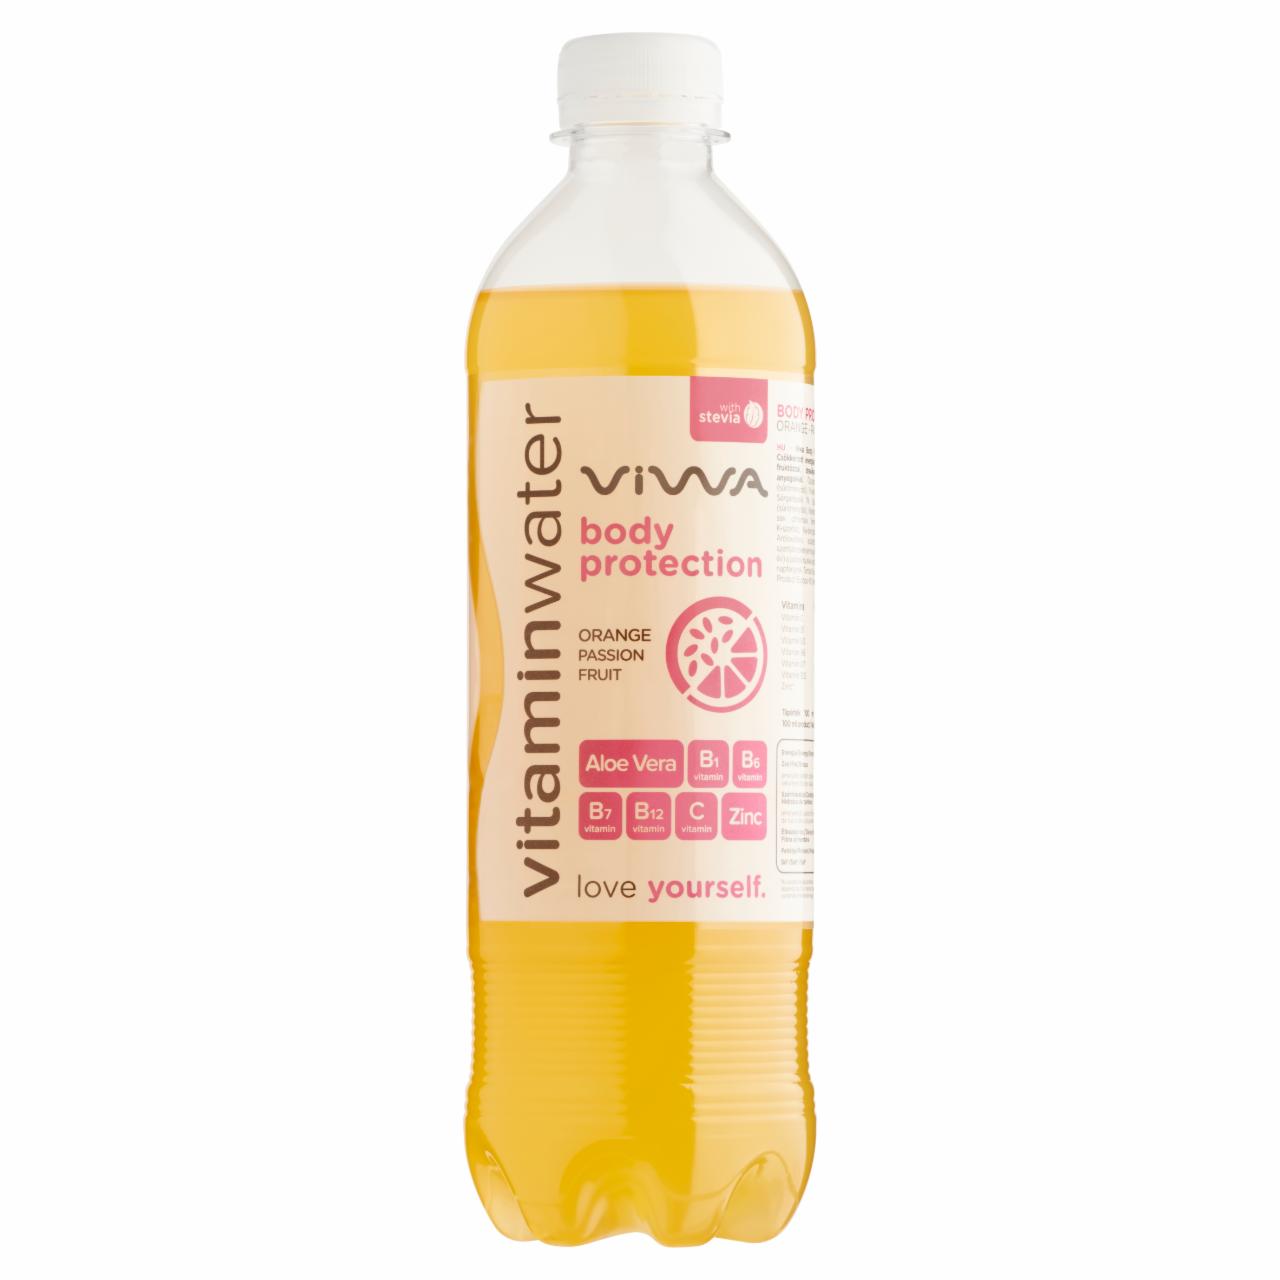 Képek - Viwa Vitaminwater Body Pro narancs-maracuja ízű szénsavmentes üdítőital 600 ml